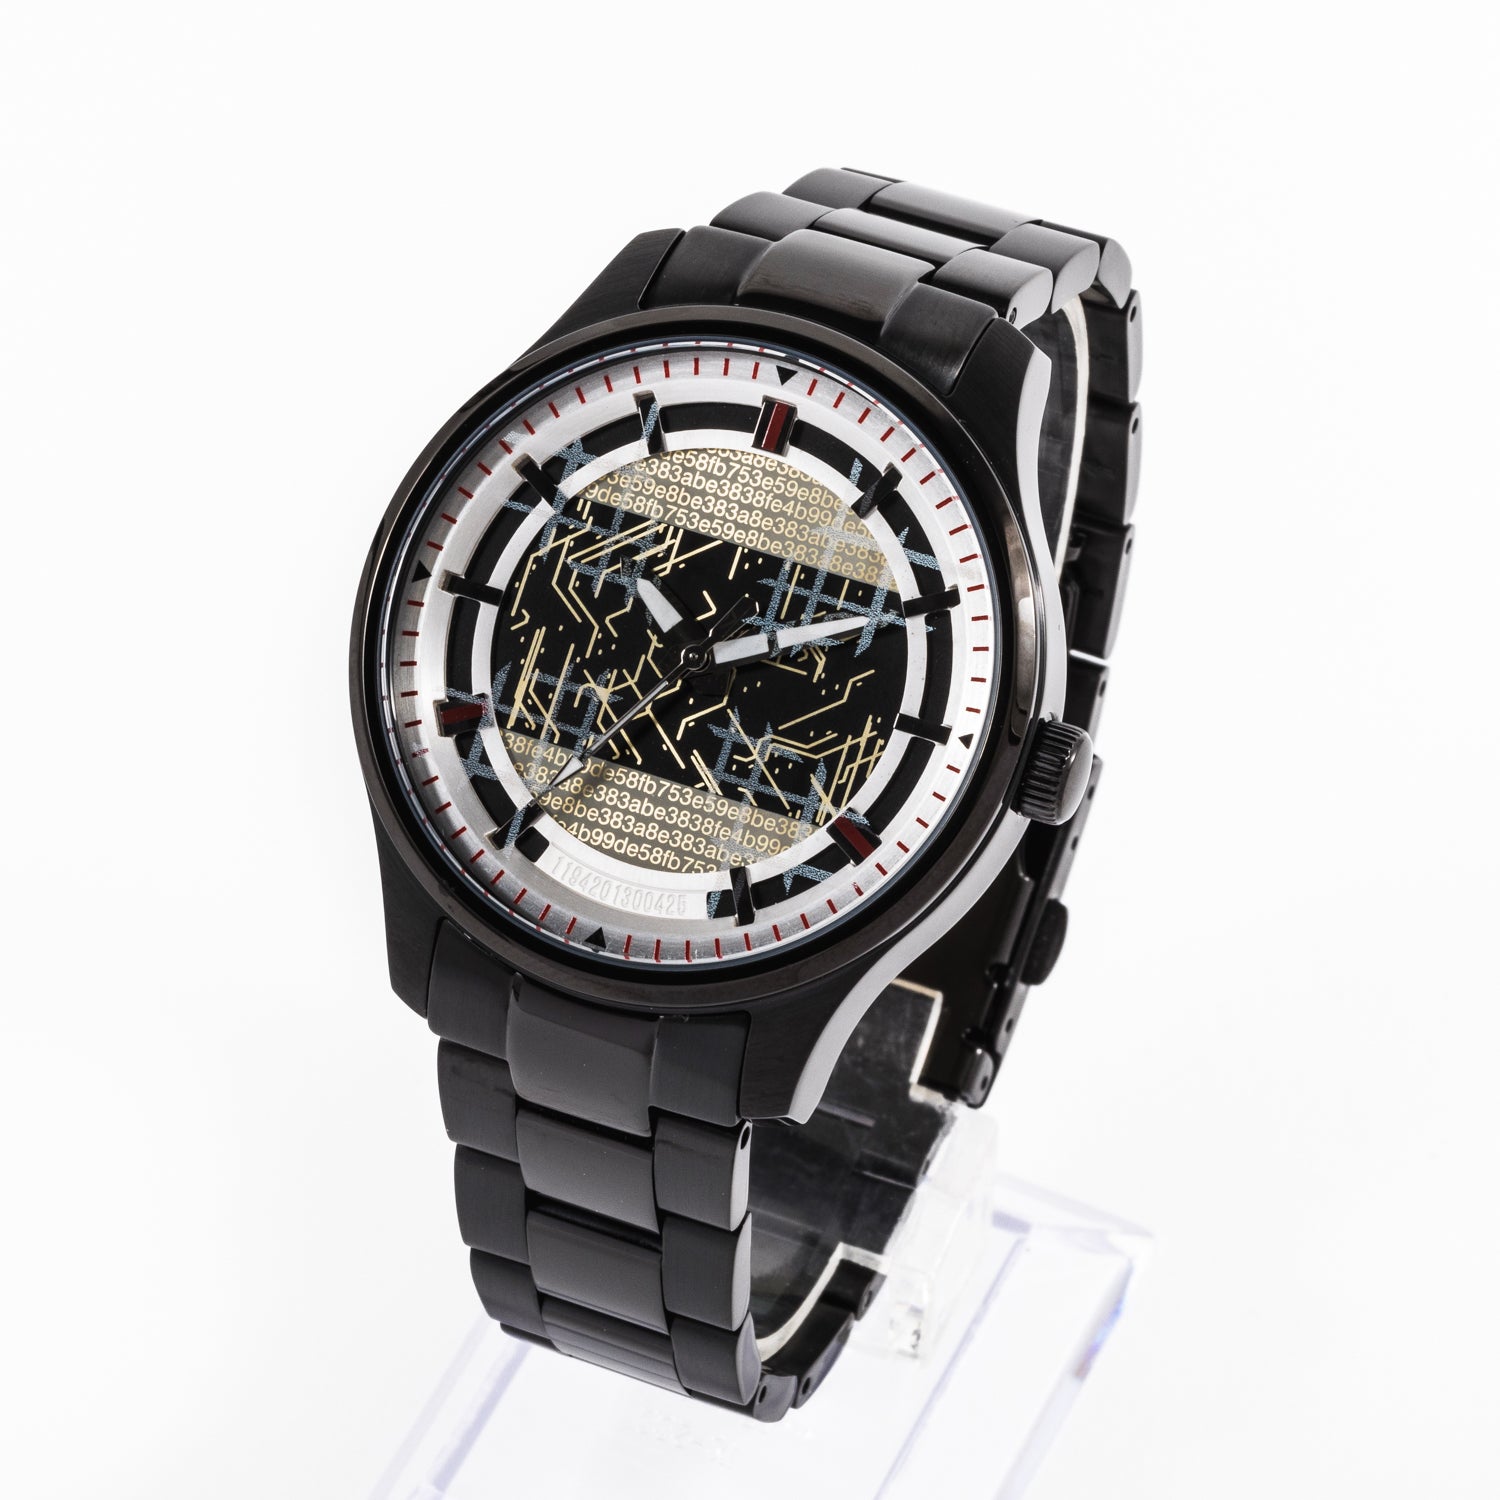 ニーアオートマタ 9Sモデル 腕時計 スーパーグルーピーズ-